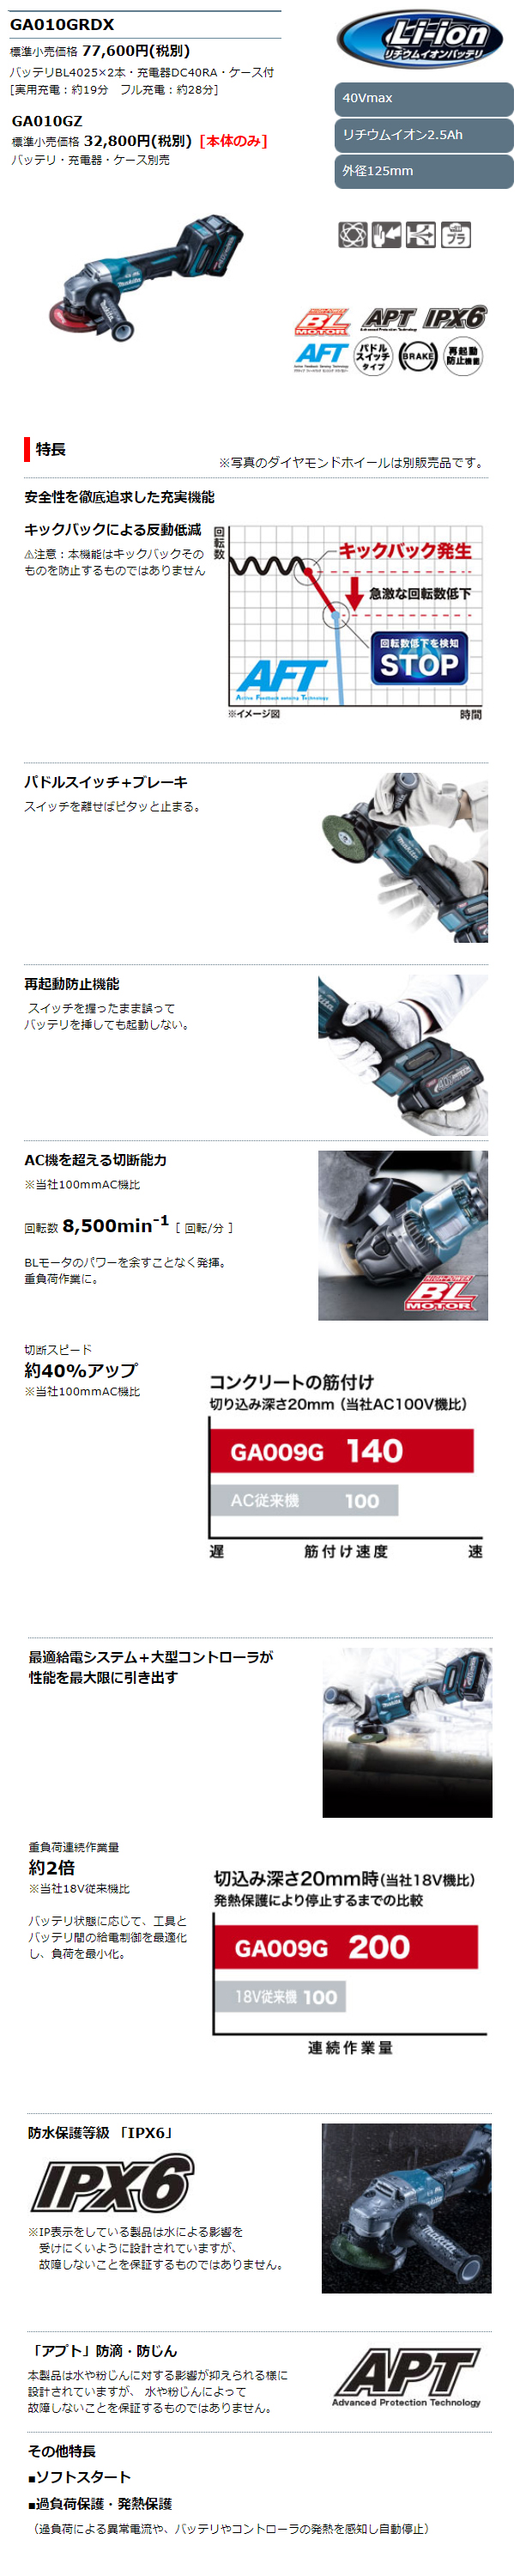 マキタ 40VMAX 125mm充電式ディスクグラインダ GA010GRDX/GZ